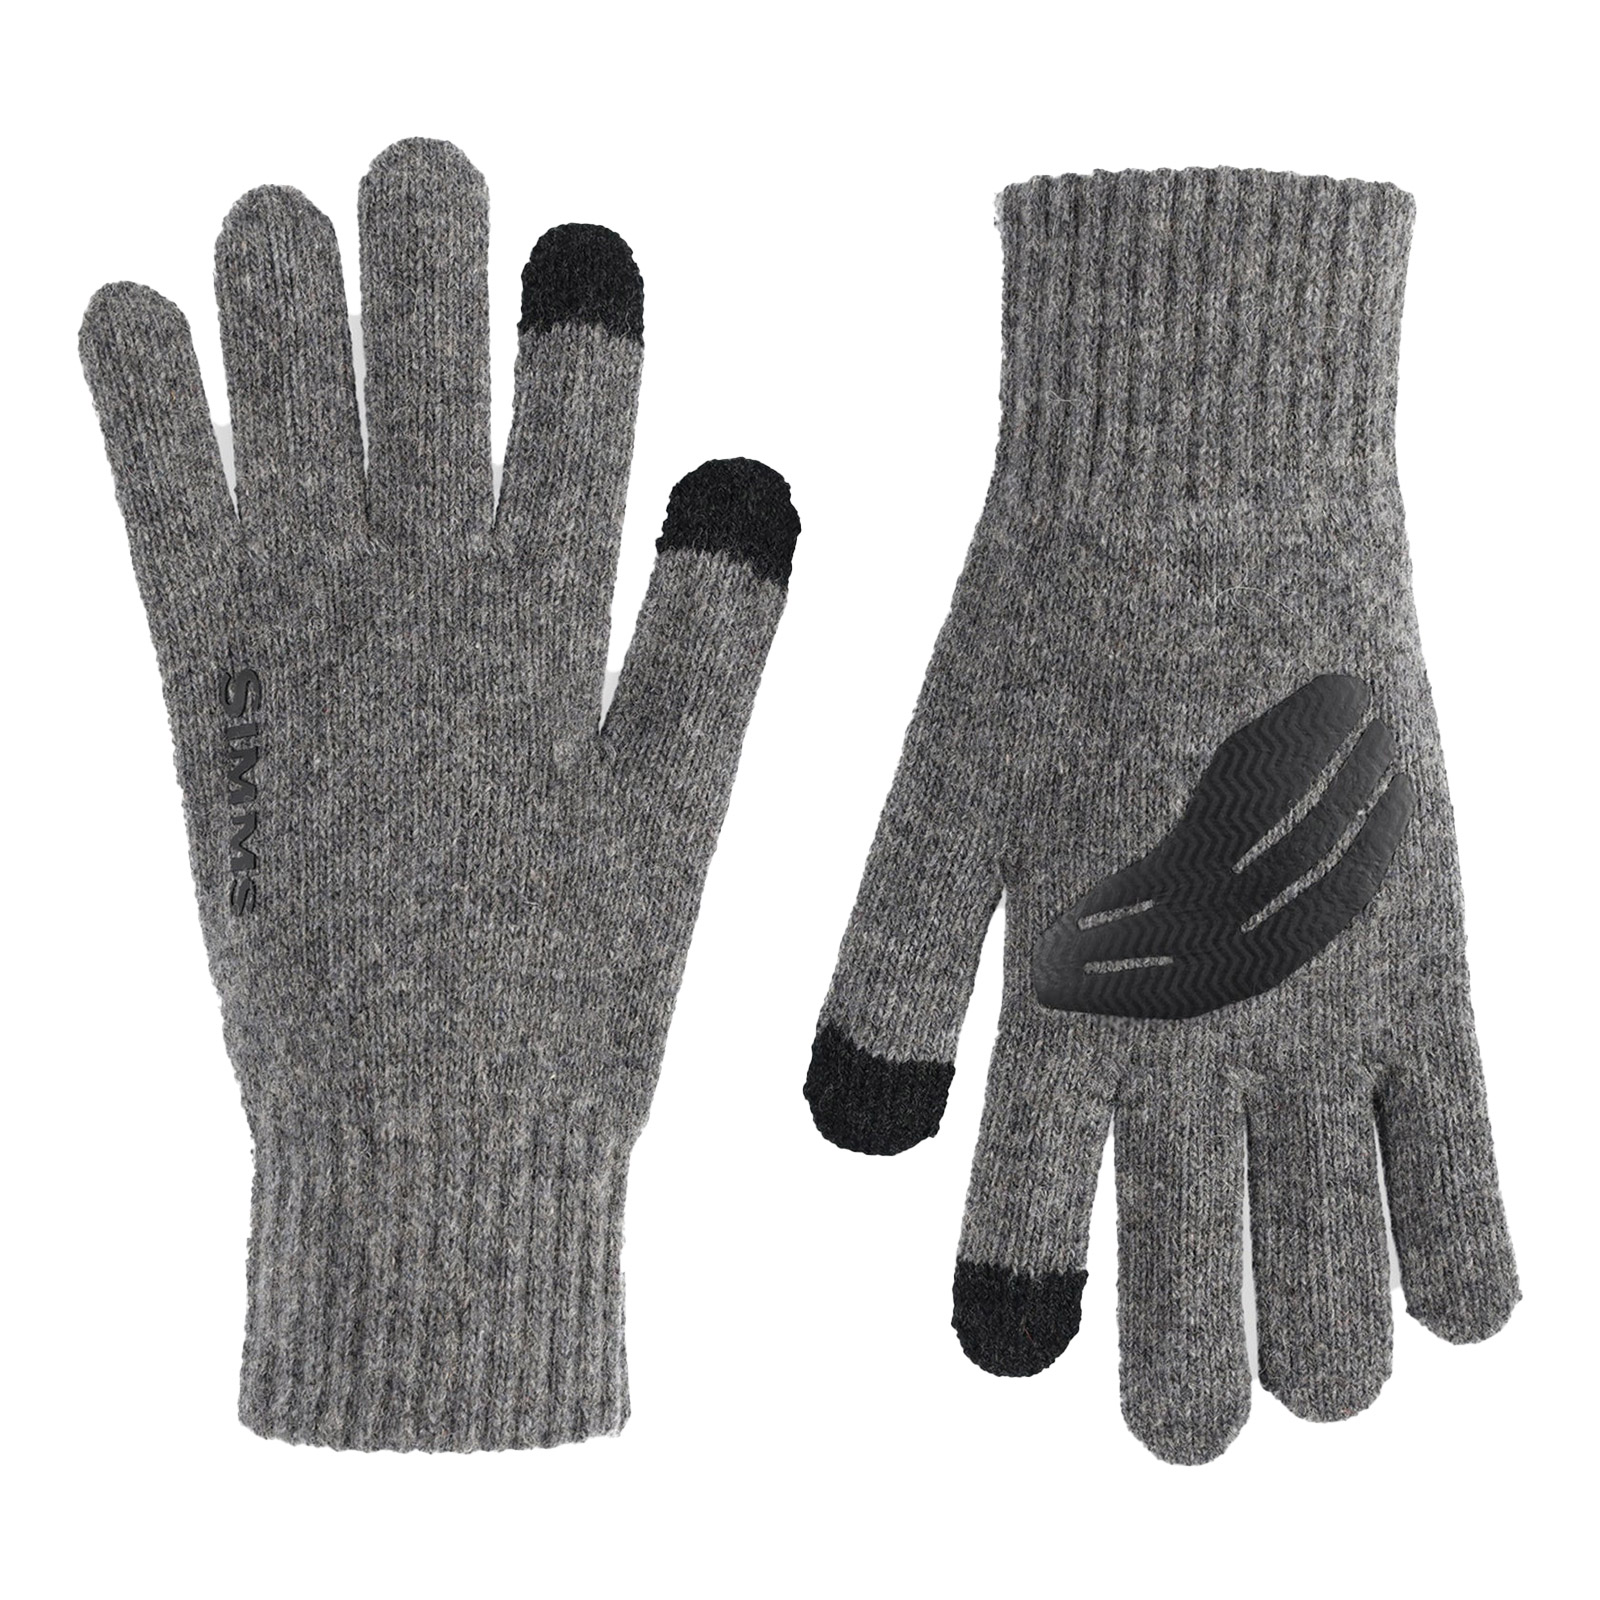 Simms Wool Full Finger Glove - L/XL - Steel